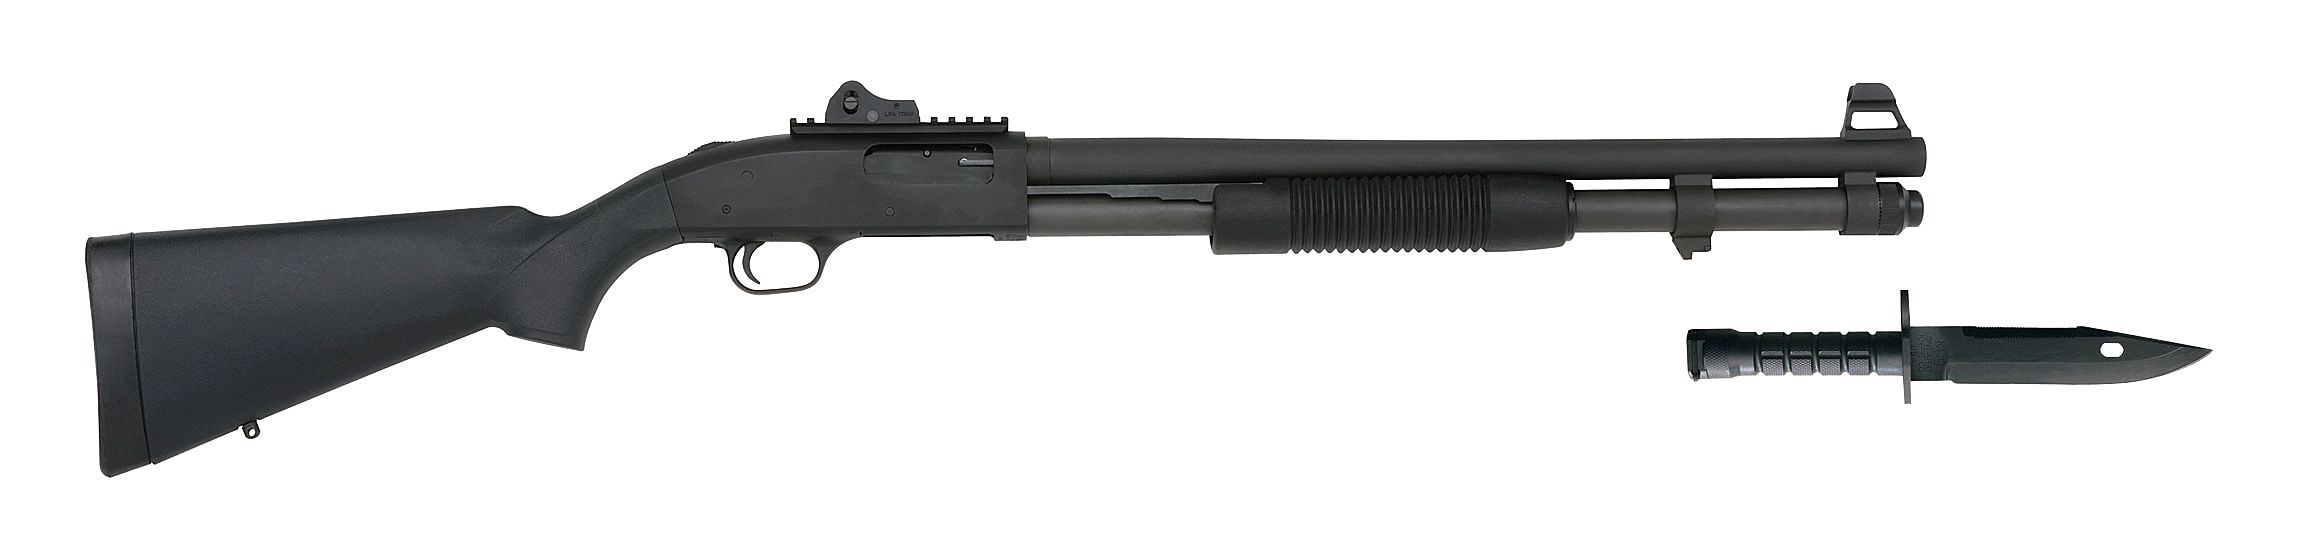 Mossberg 590A1 Tactical Shotguns